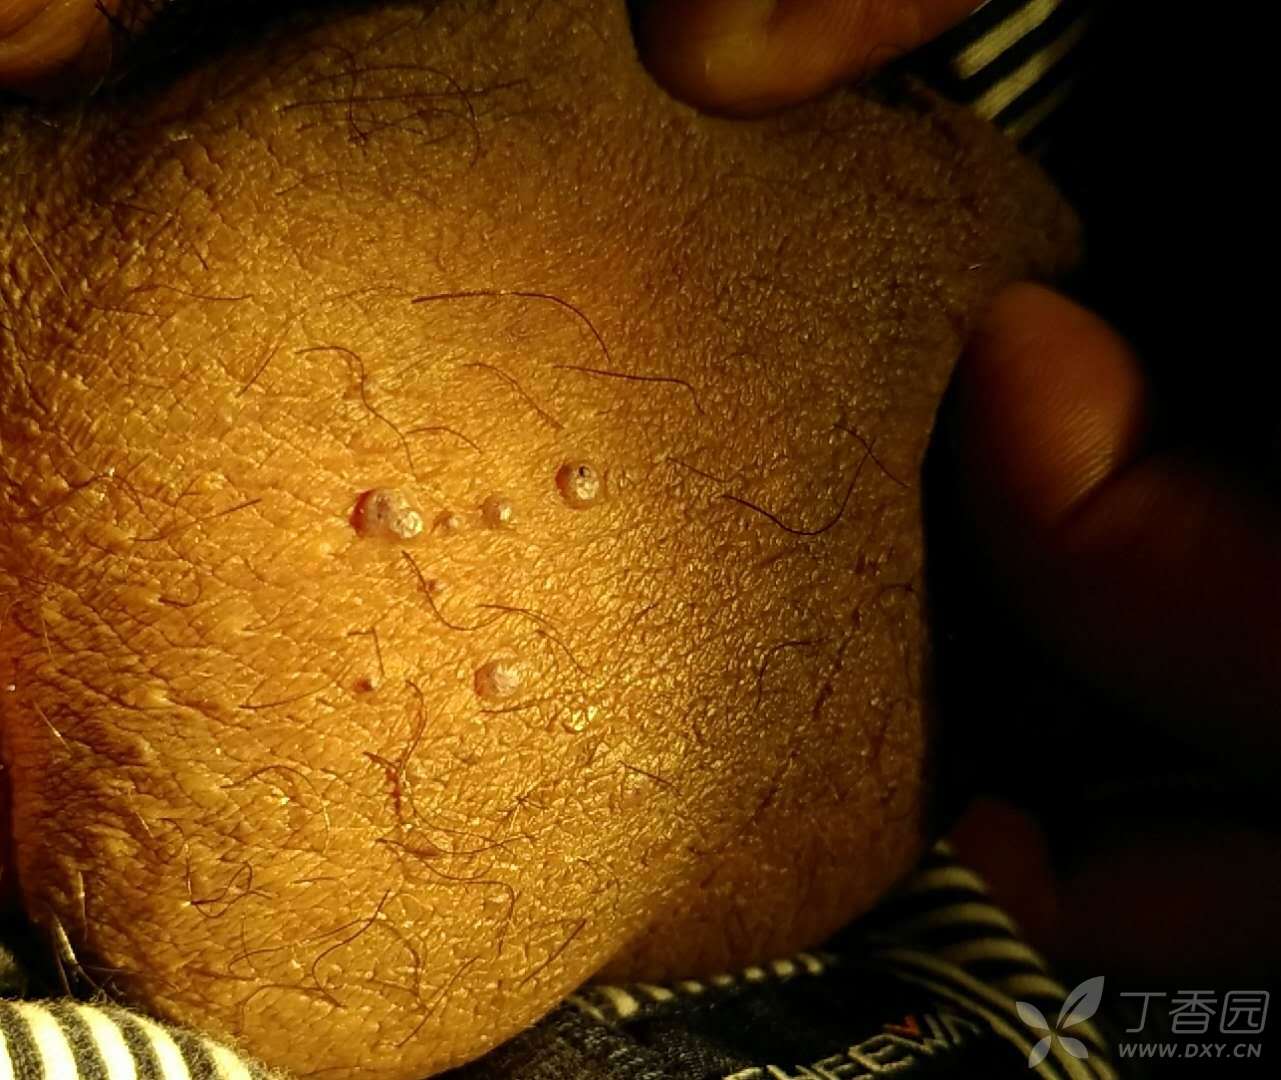 43 简要病史:患者无明显诱因,近二个月发现阴囊处长十余个扁平状丘疹